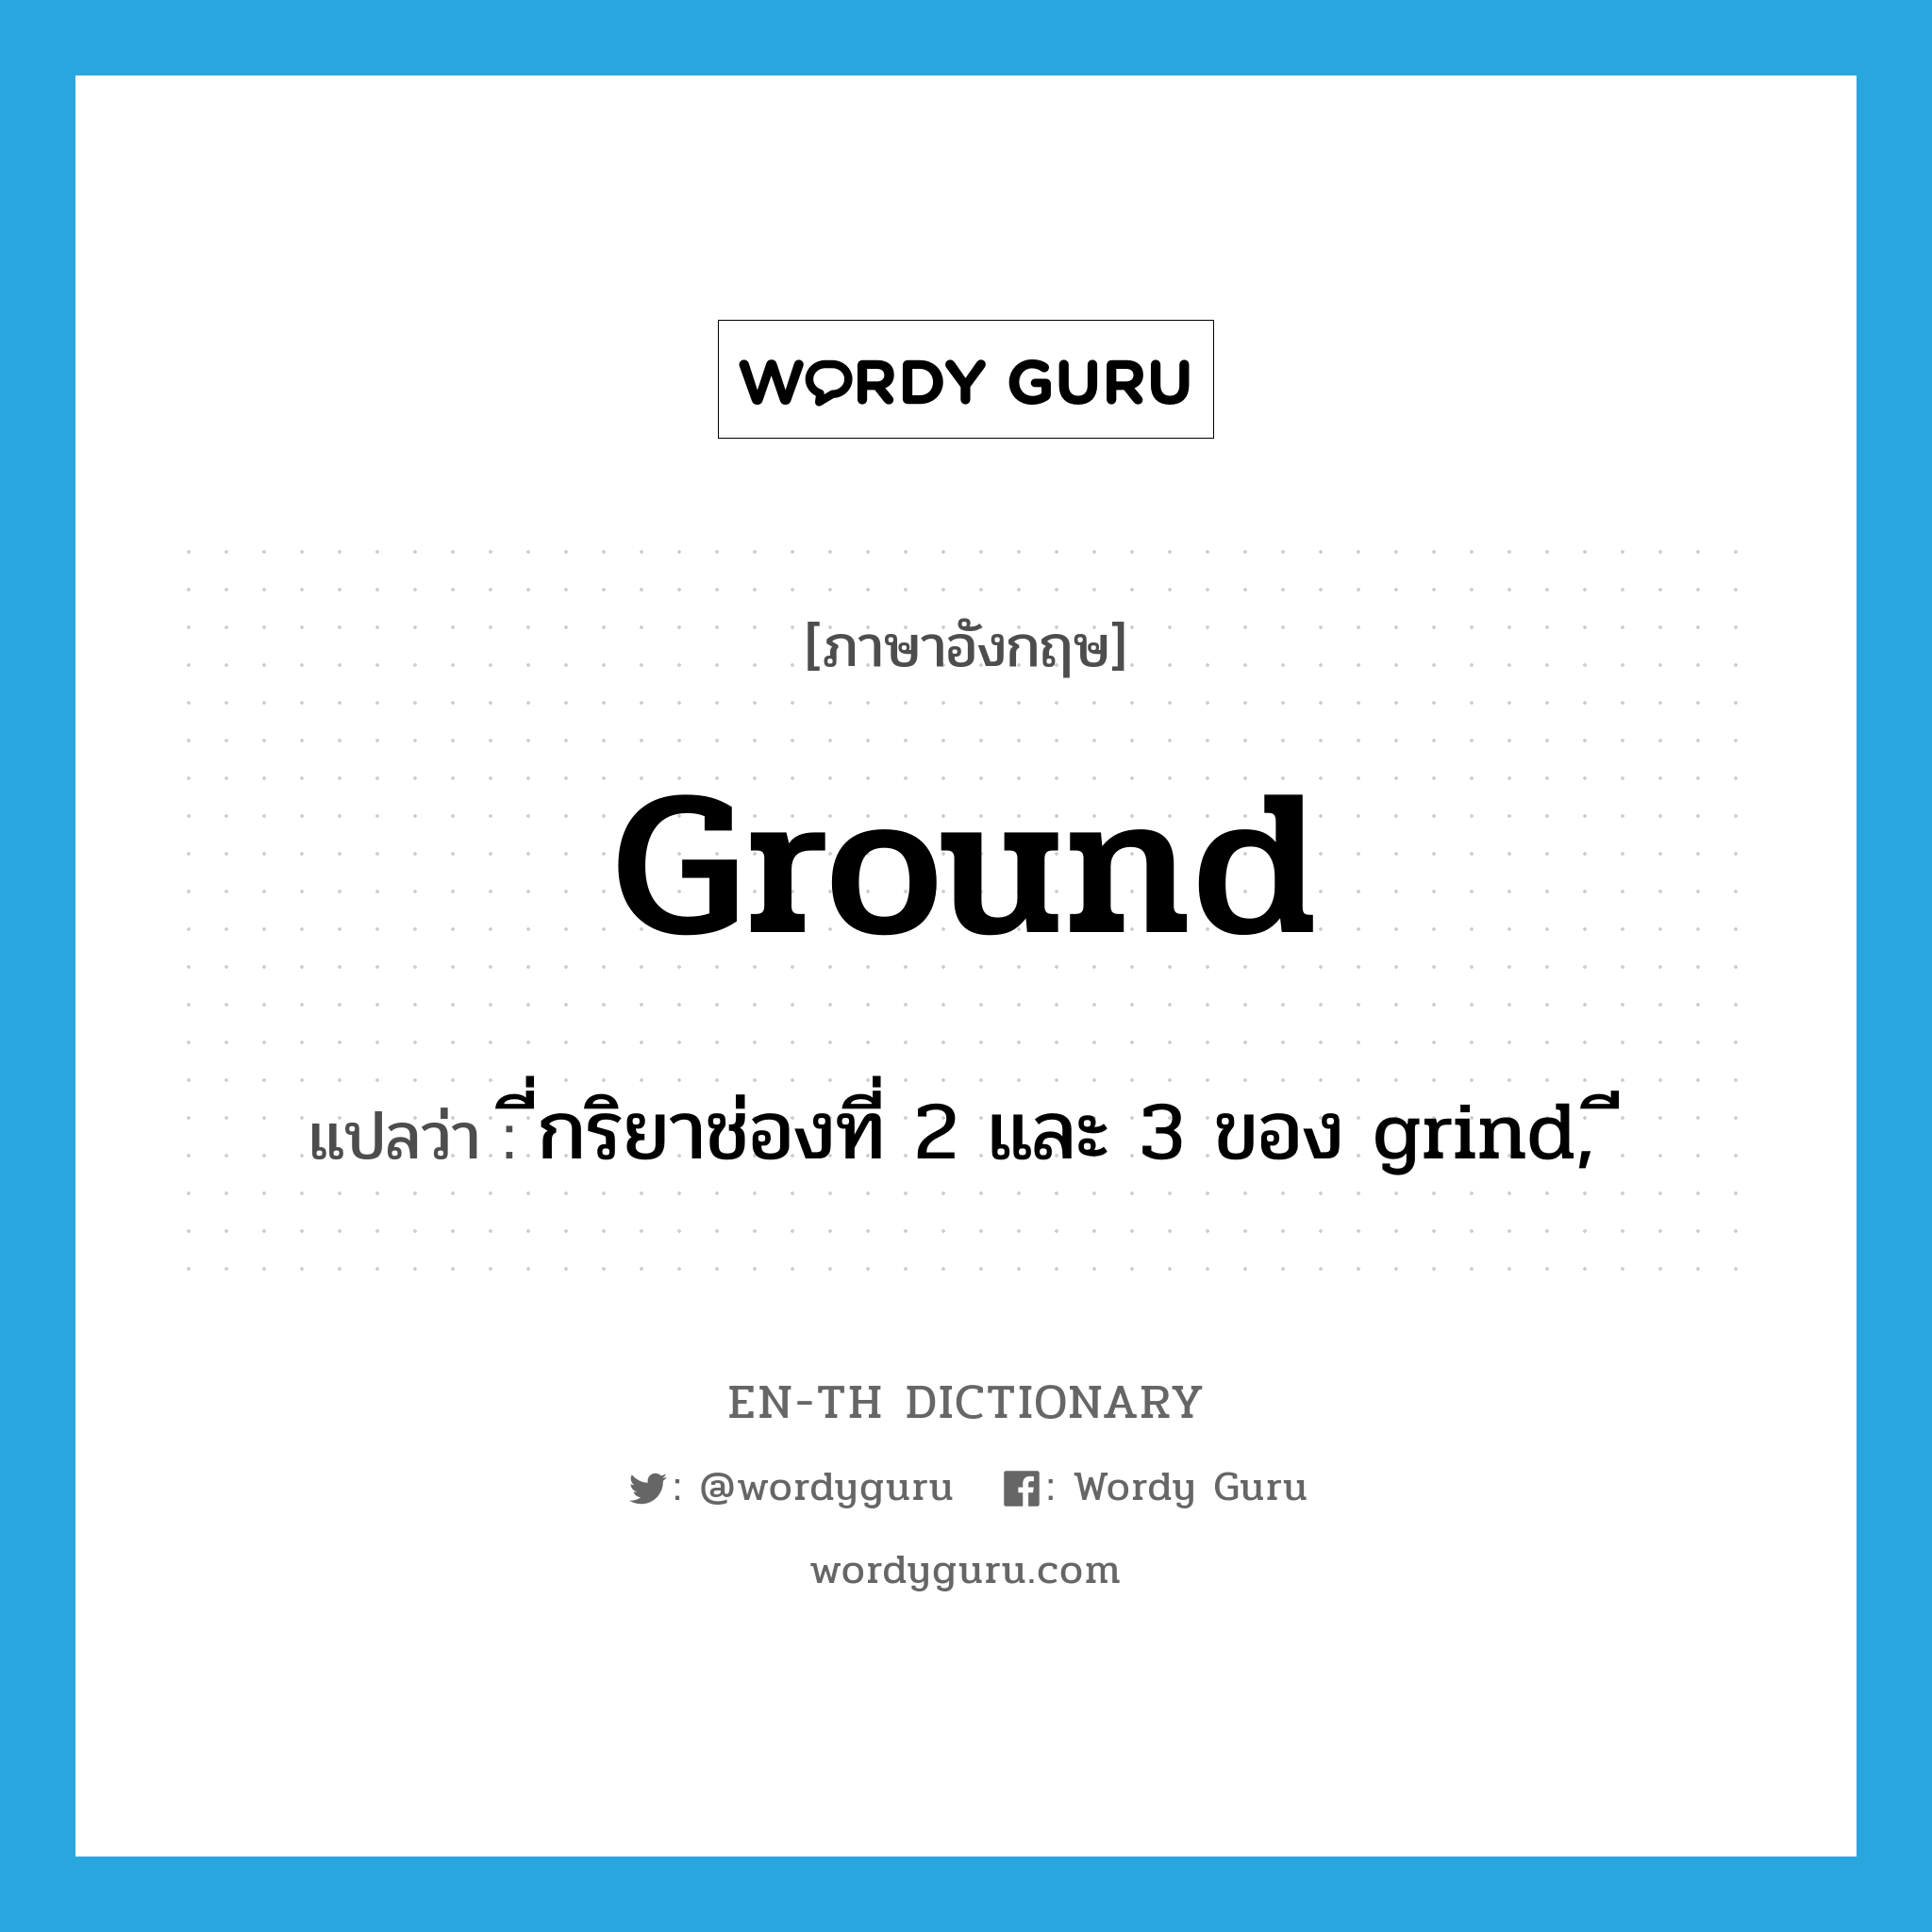 ground แปลว่า?, คำศัพท์ภาษาอังกฤษ ground แปลว่า ี่กริยาช่องที่ 2 และ 3 ของ grind, ี ประเภท VI หมวด VI